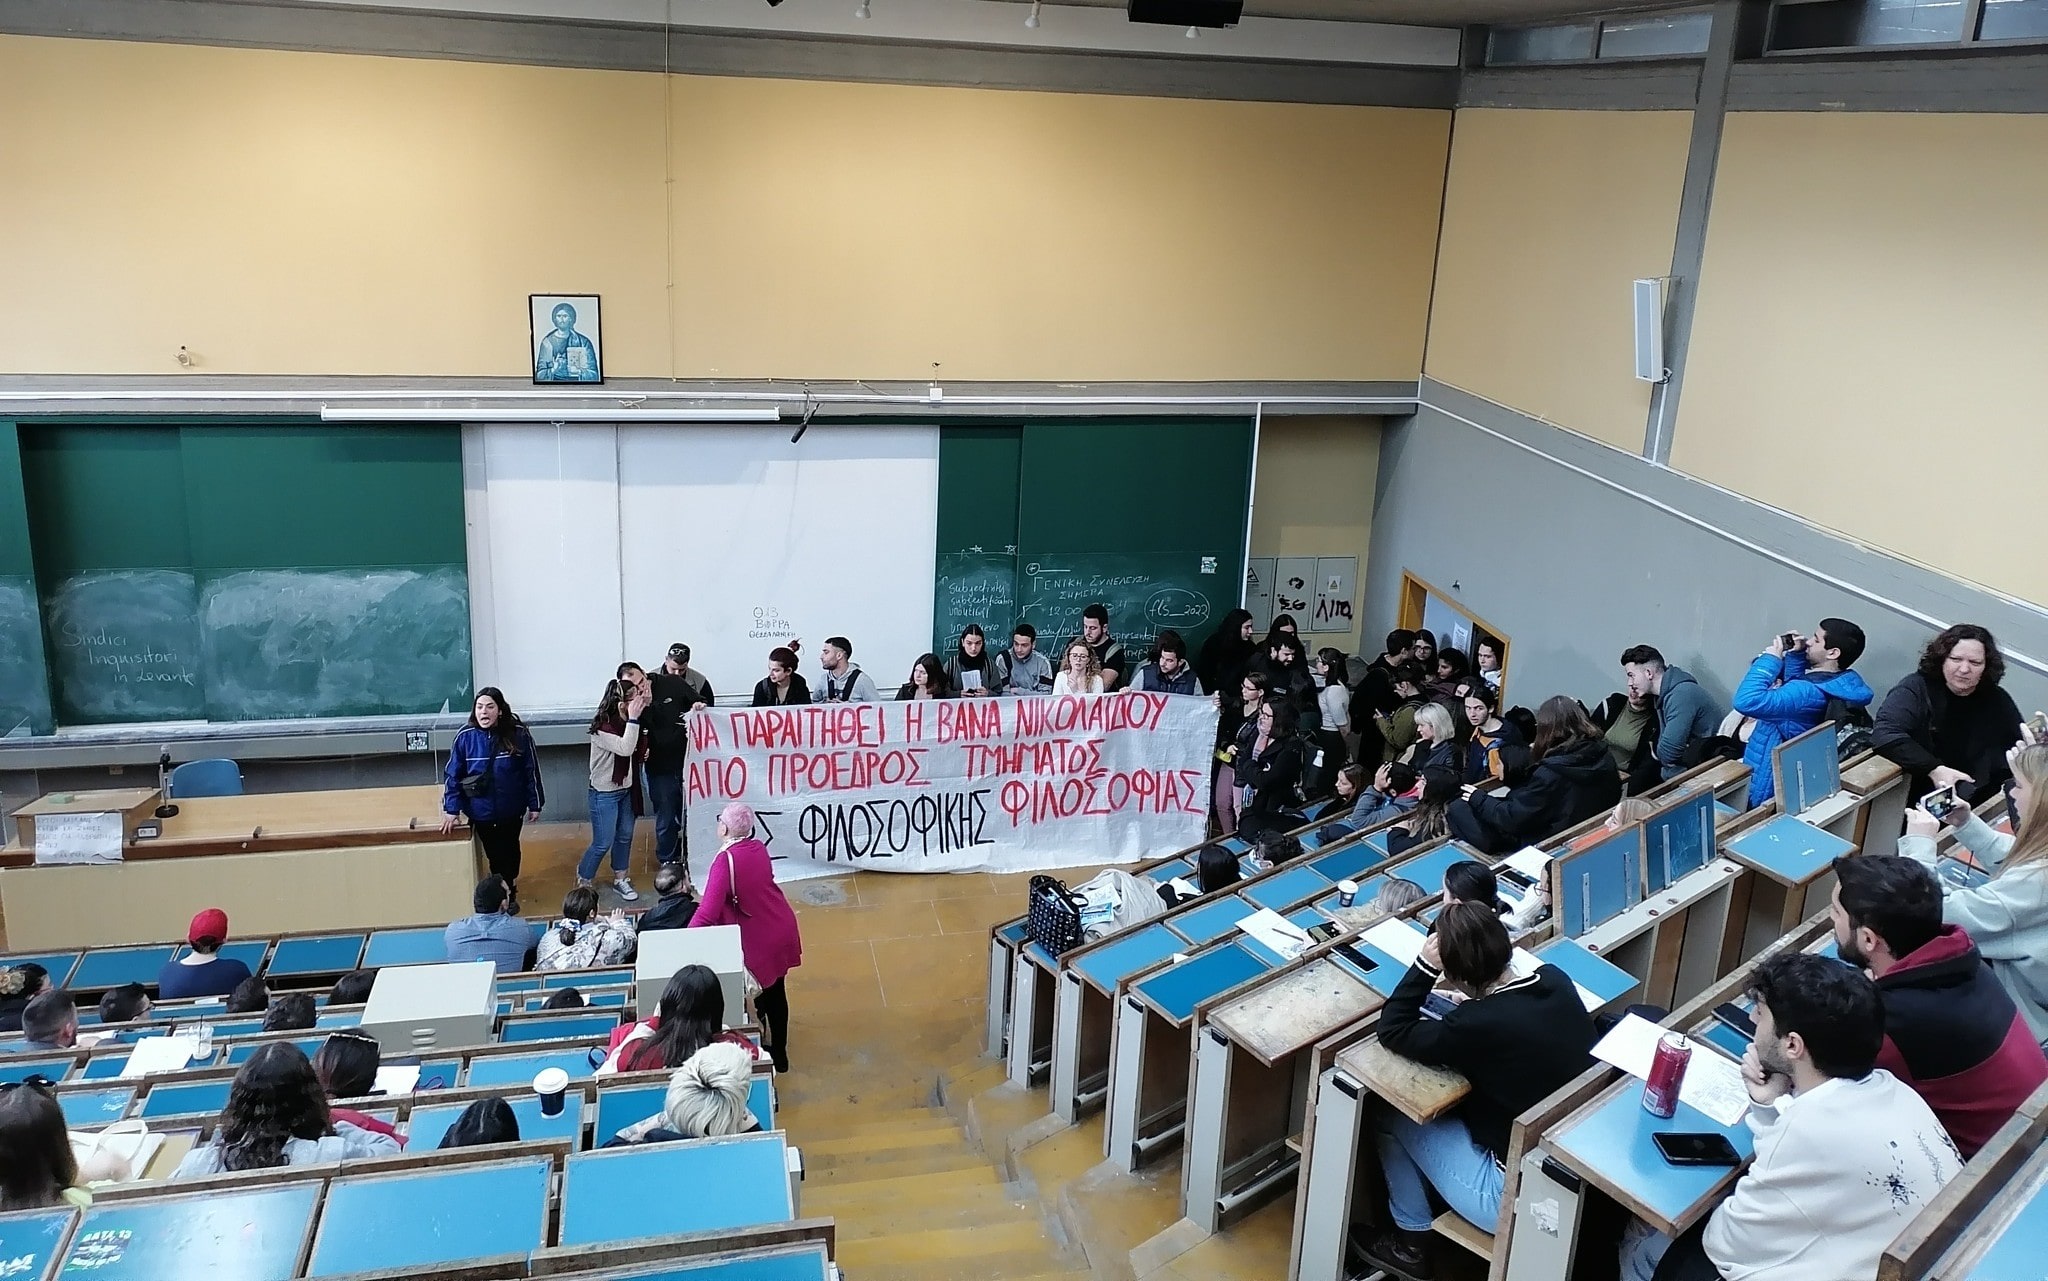  ΕΚΠΑ: Φοιτητές ζητούν την παραίτηση καθηγήτριας / Η Σχολή κάνει λόγο για στοχοποίηση